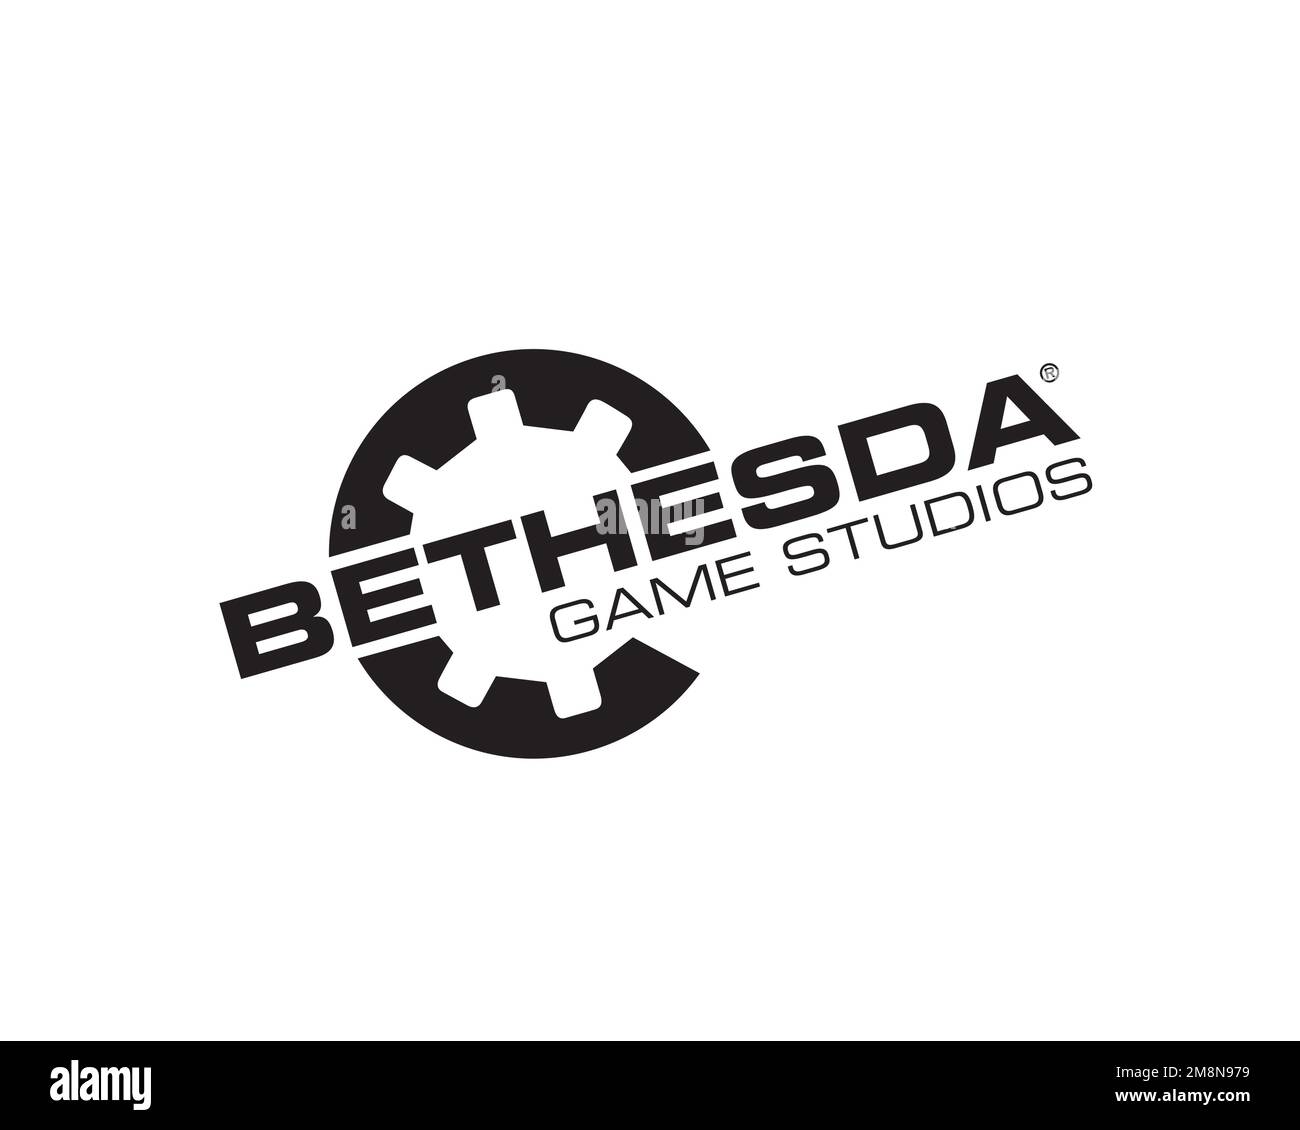 Bethesda Game Studios, logo ruotato, sfondo bianco Foto Stock